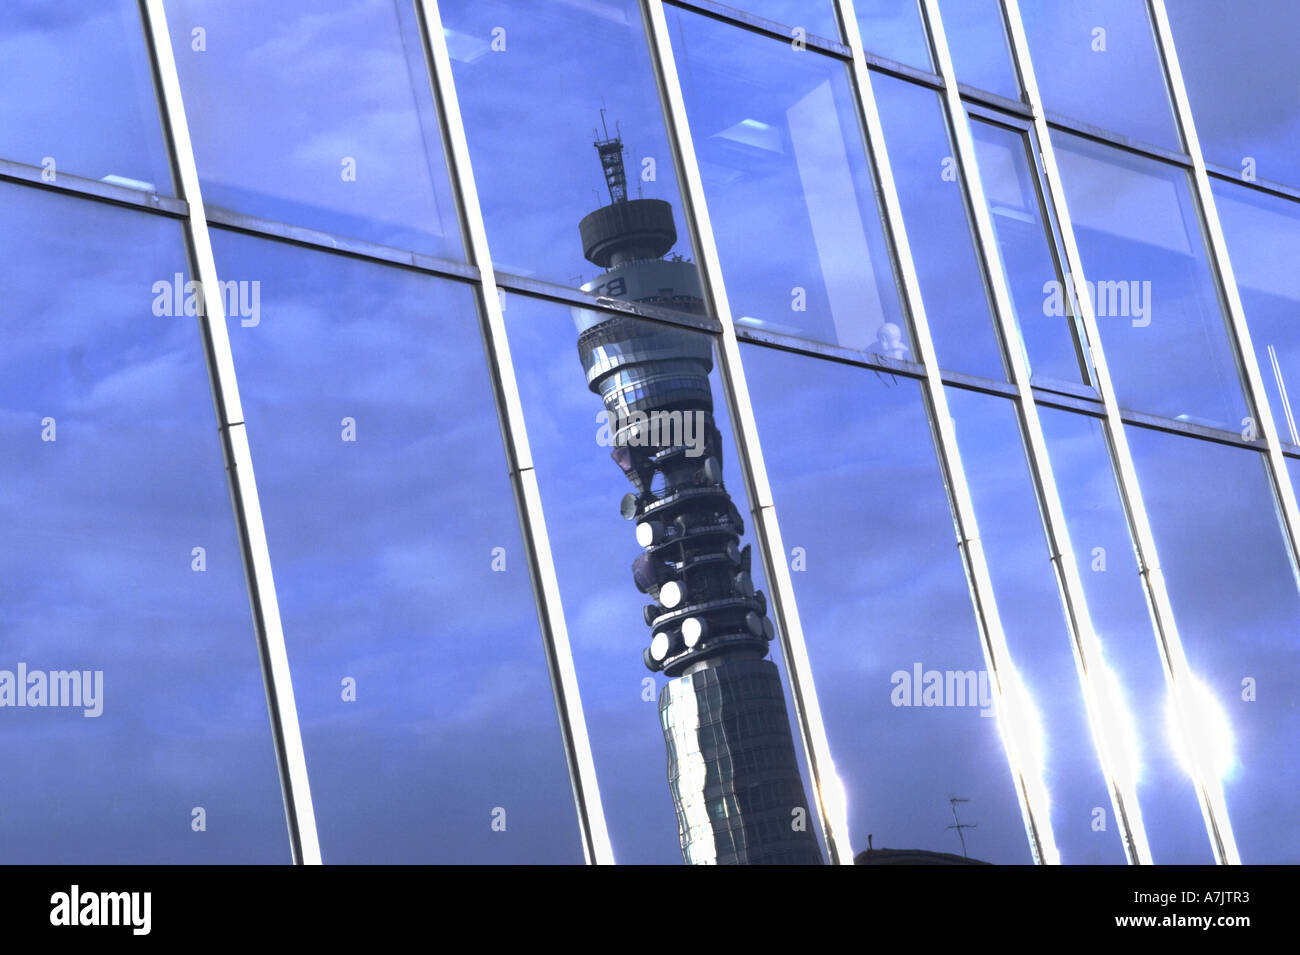 La réflexion de la fenêtre de BT British Telecom Tower à Londres UK Banque D'Images